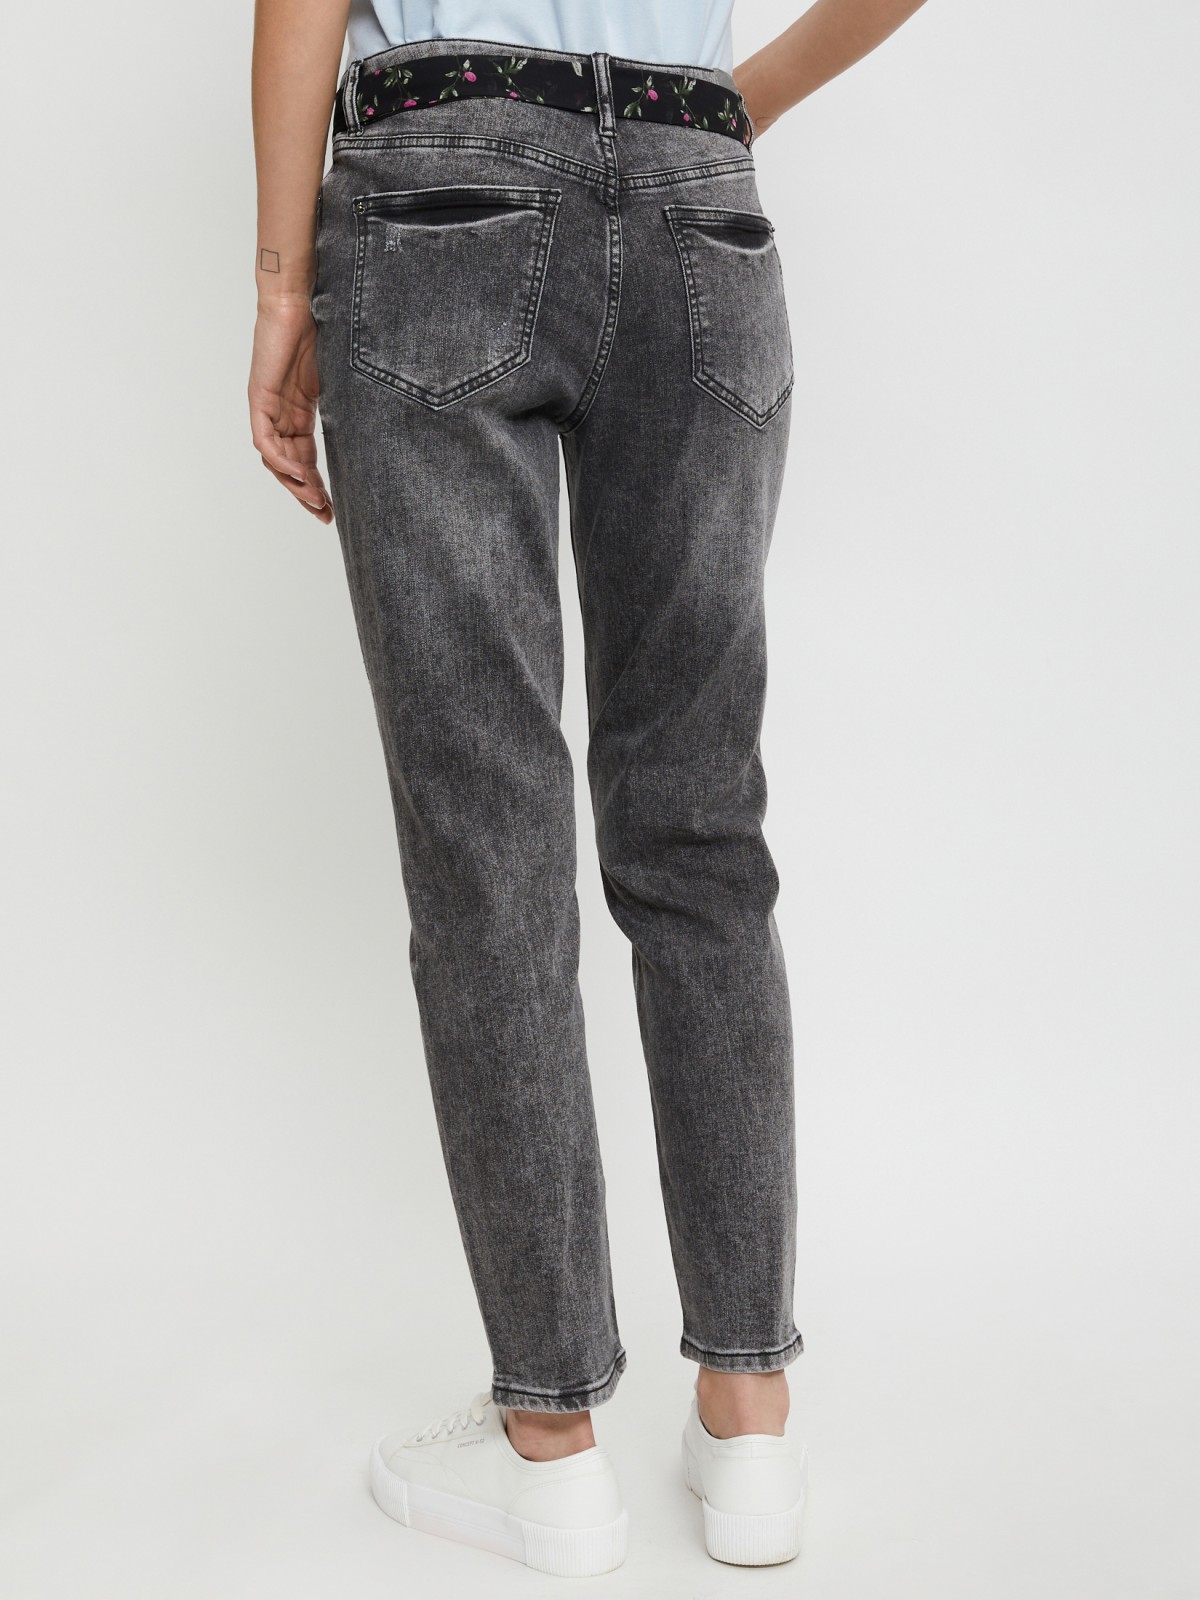 Брюки джинсовые zolla 02121714S183, цвет темно-серый, размер 25 - фото 5